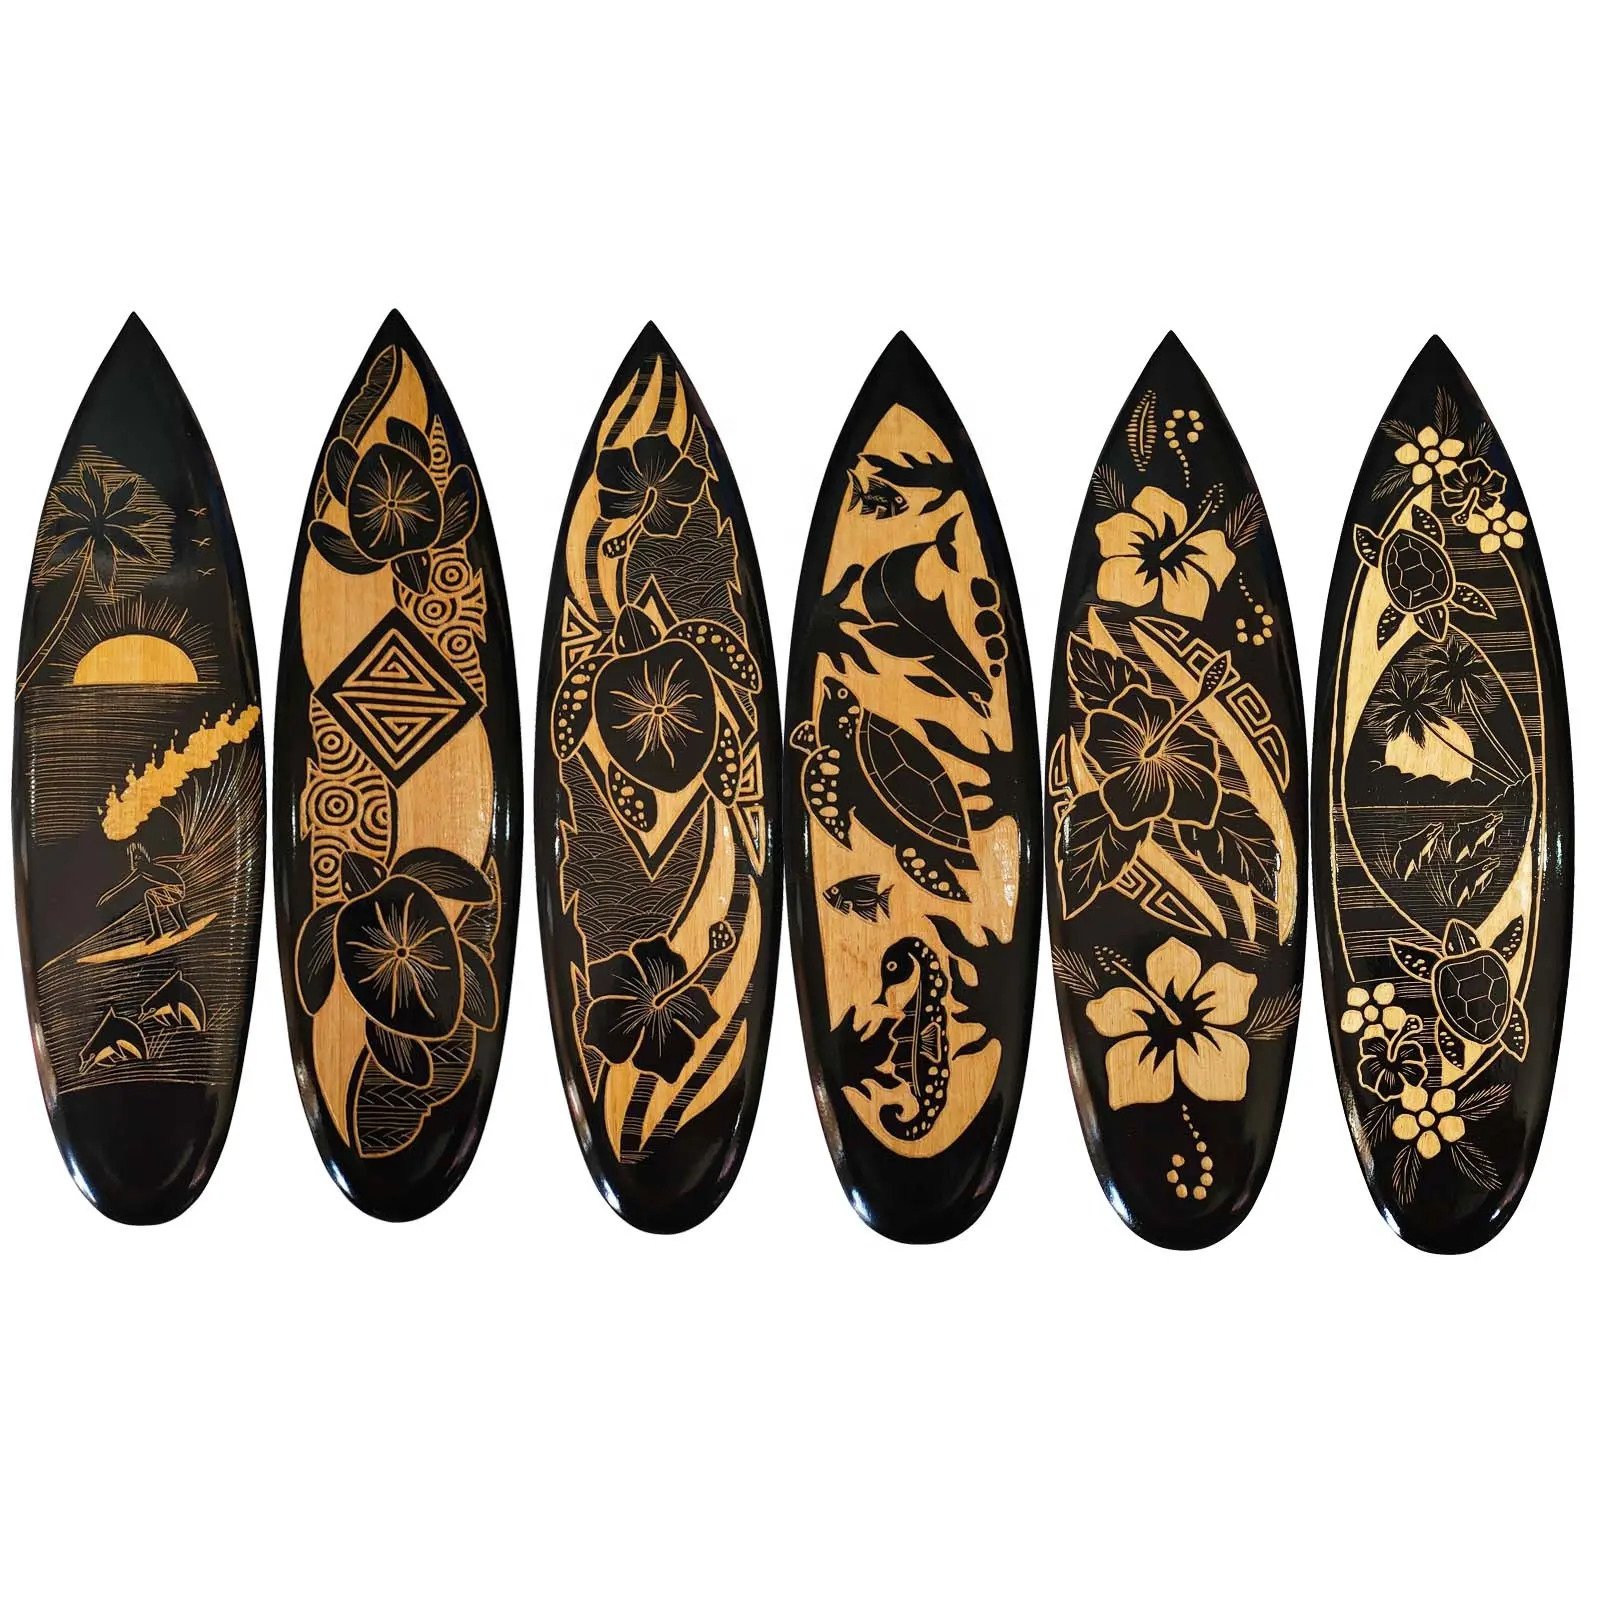 Резная вручную доска для серфинга из манго 50 см смешанный дизайн настенное искусство Гавайский подарок и ремесло из бали Индонезии